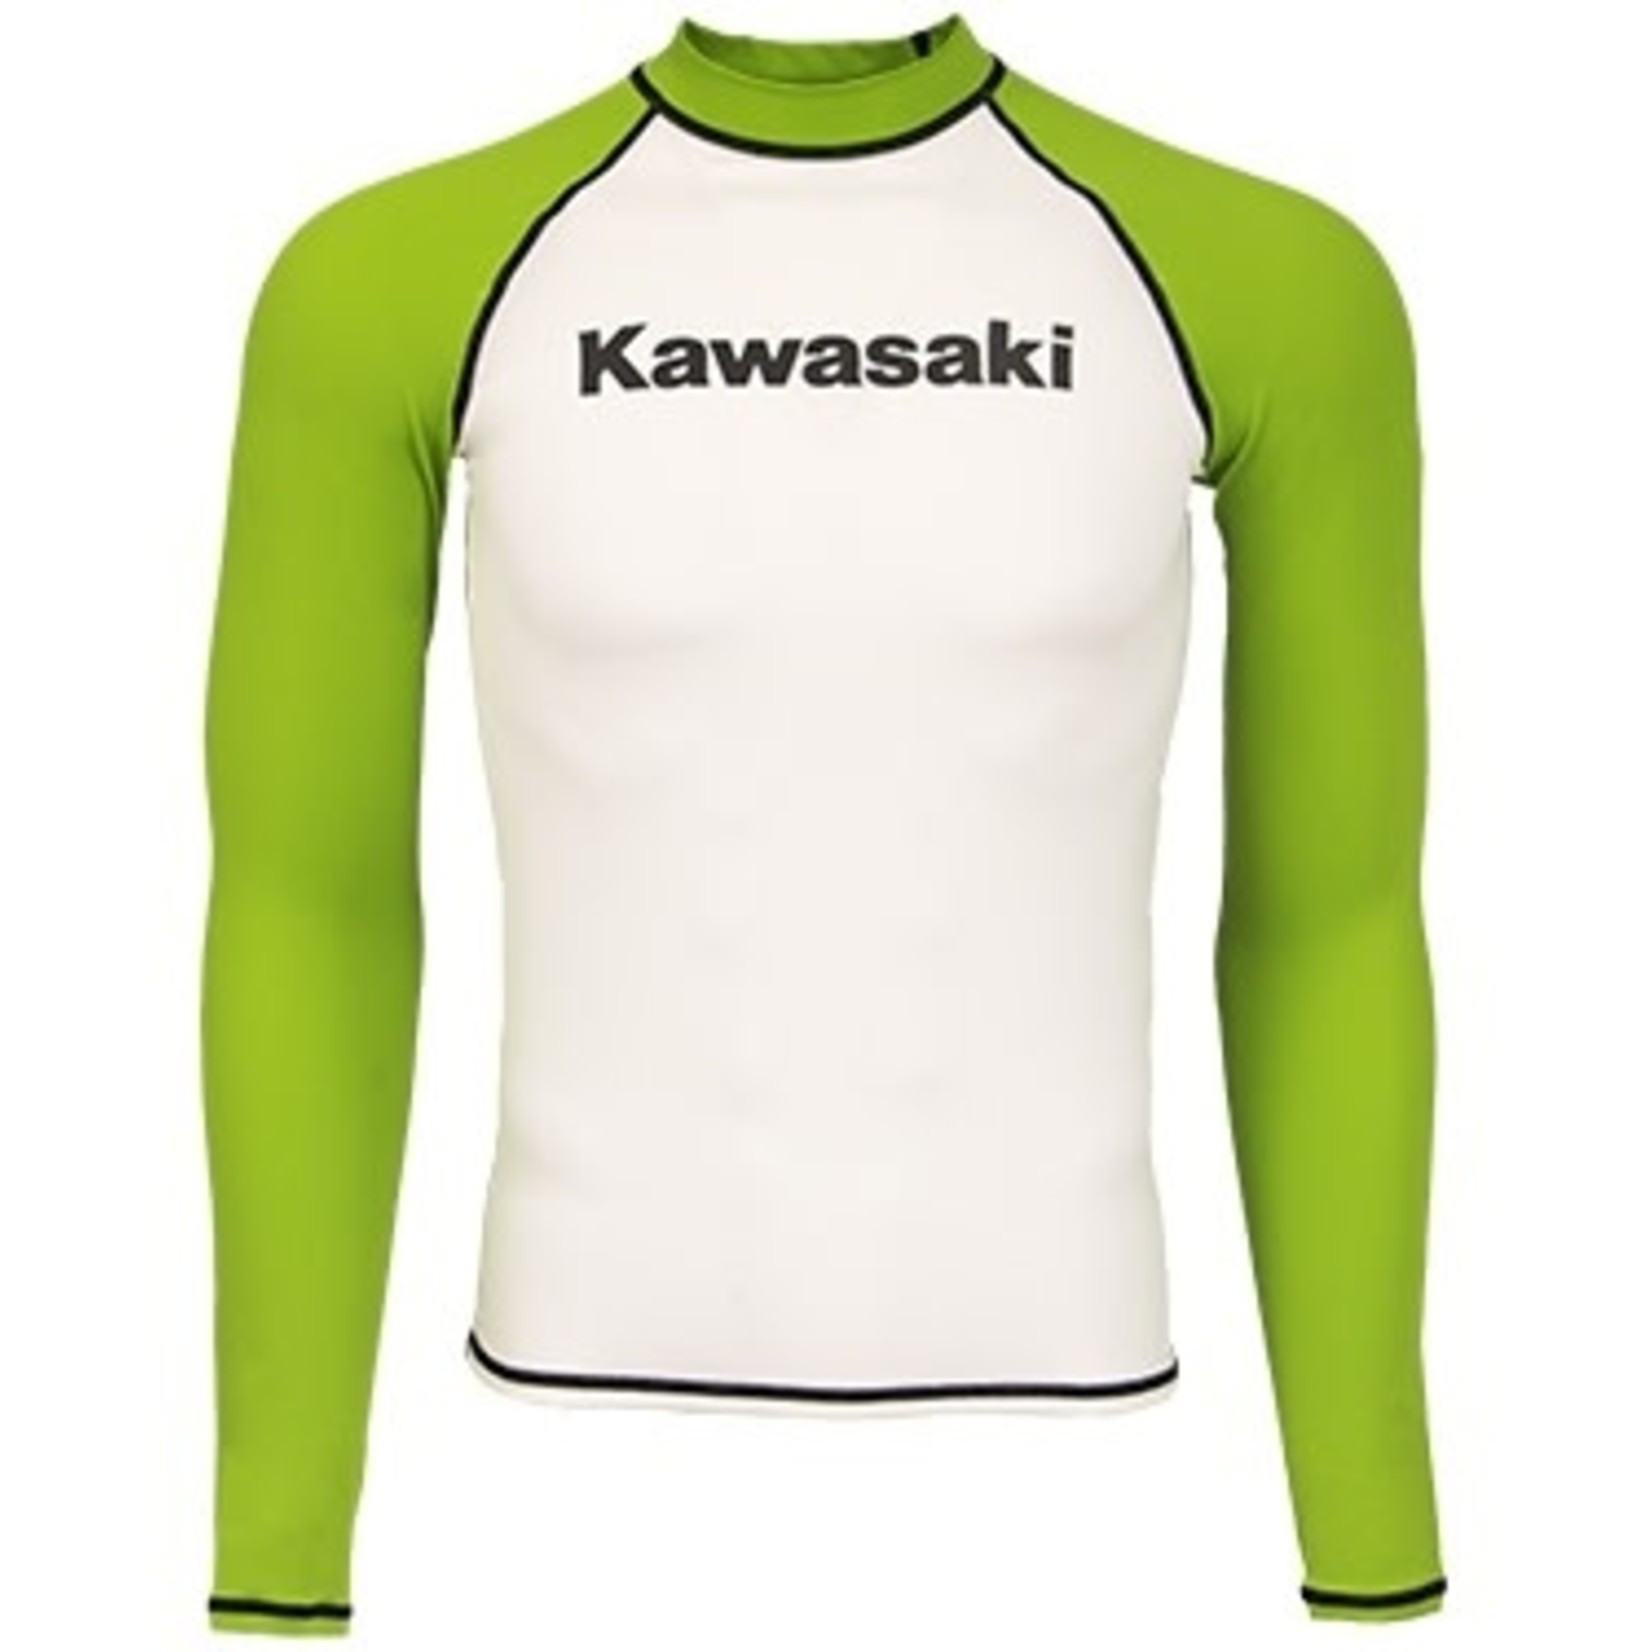 Kawasaki Kawasaki Rashguard Shirt